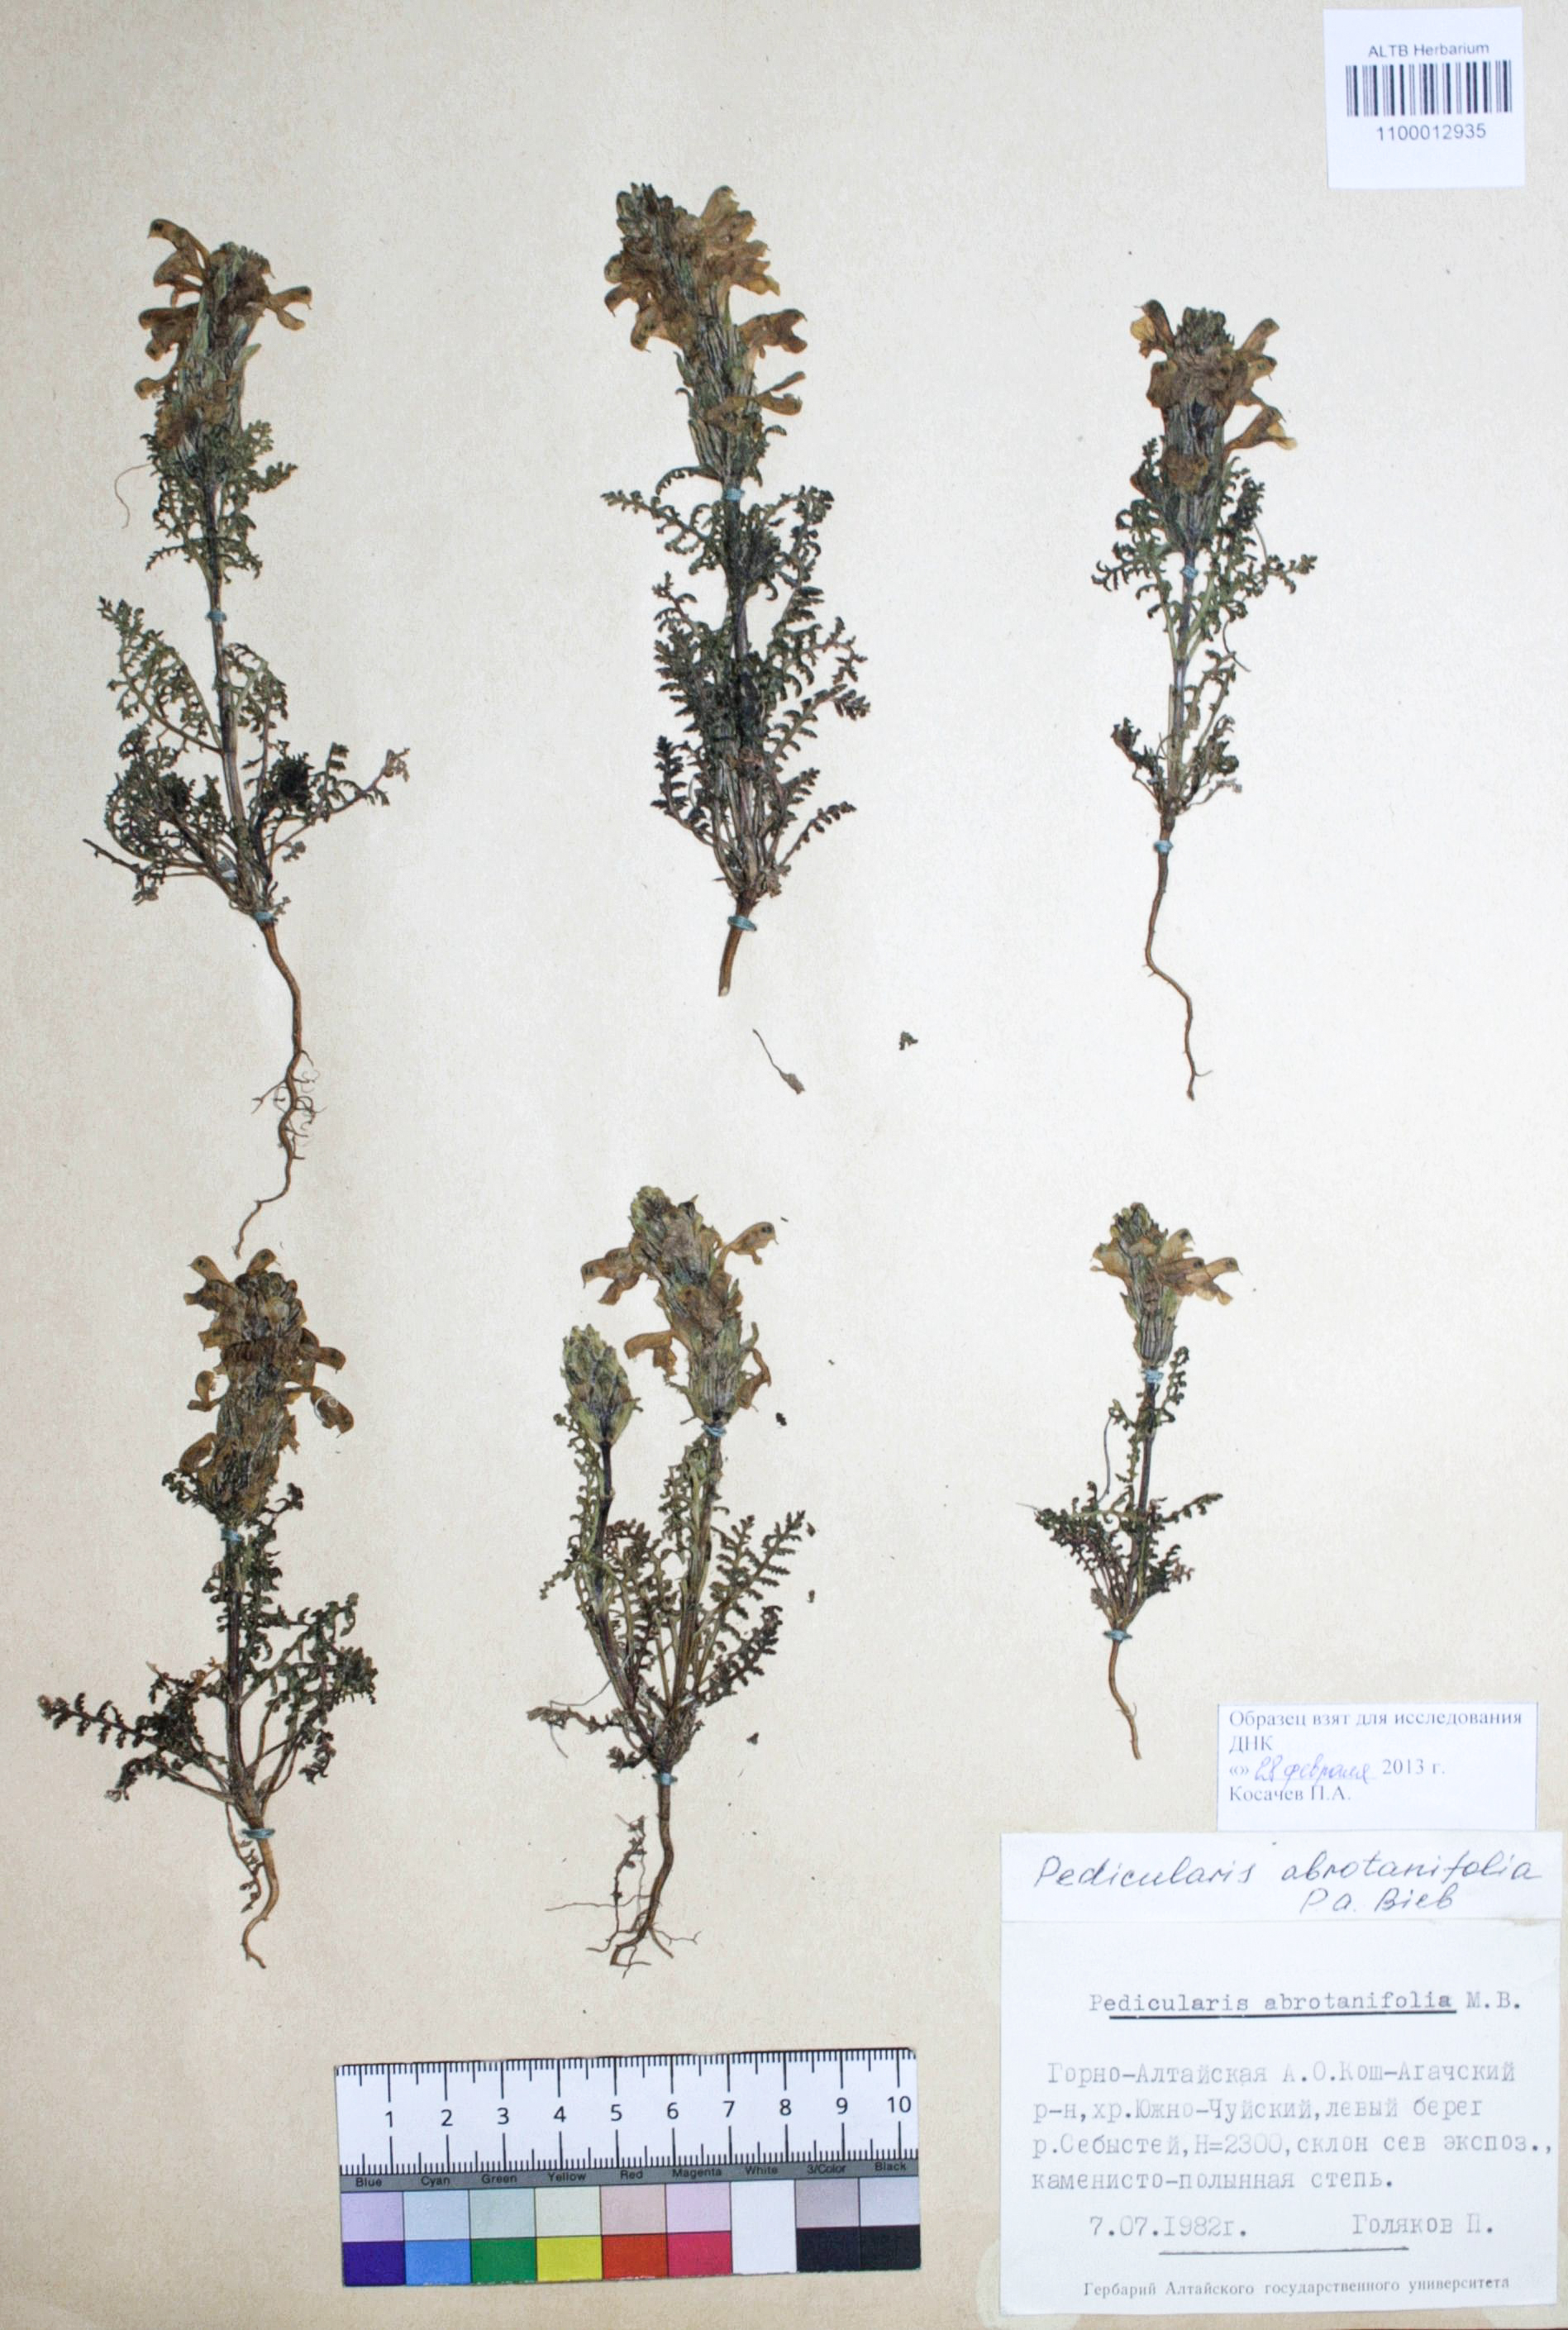 Pedicularis abrotanifolia Bieb. ex Steven